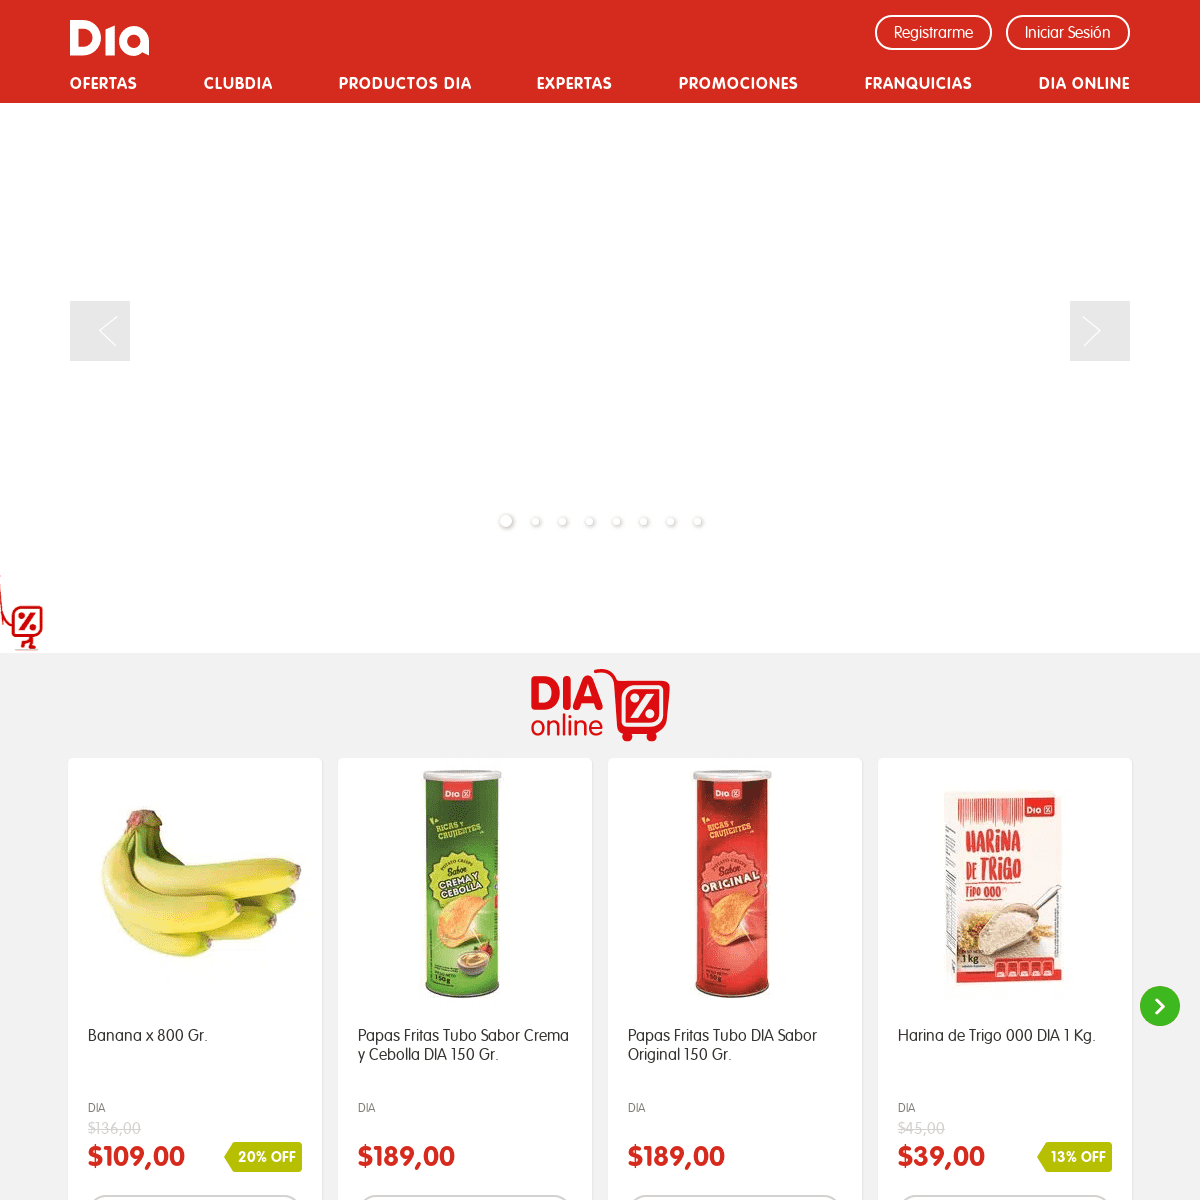 A complete backup of https://supermercadosdia.com.ar